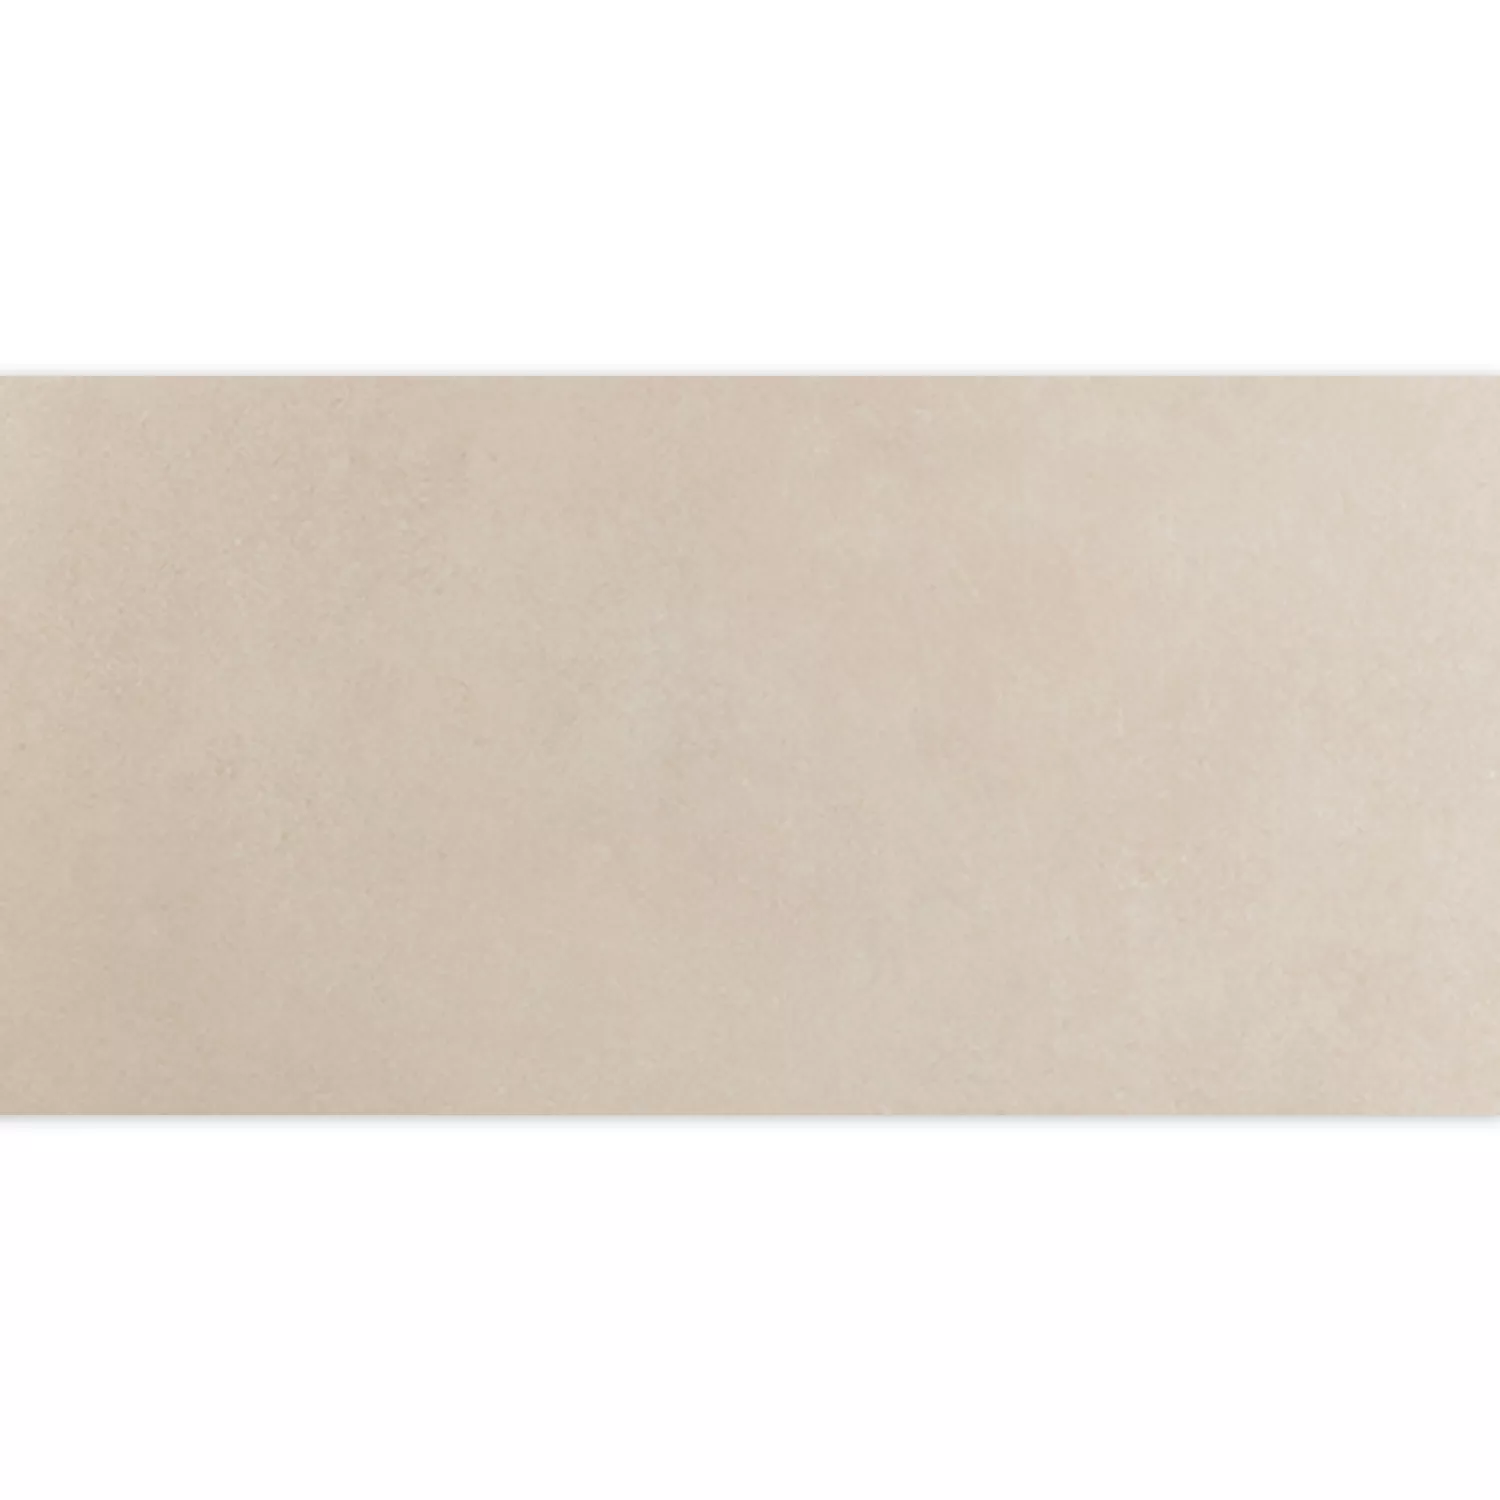 Πρότυπο Πλακάκια Δαπέδου Hayat Kρέμα 30x60cm